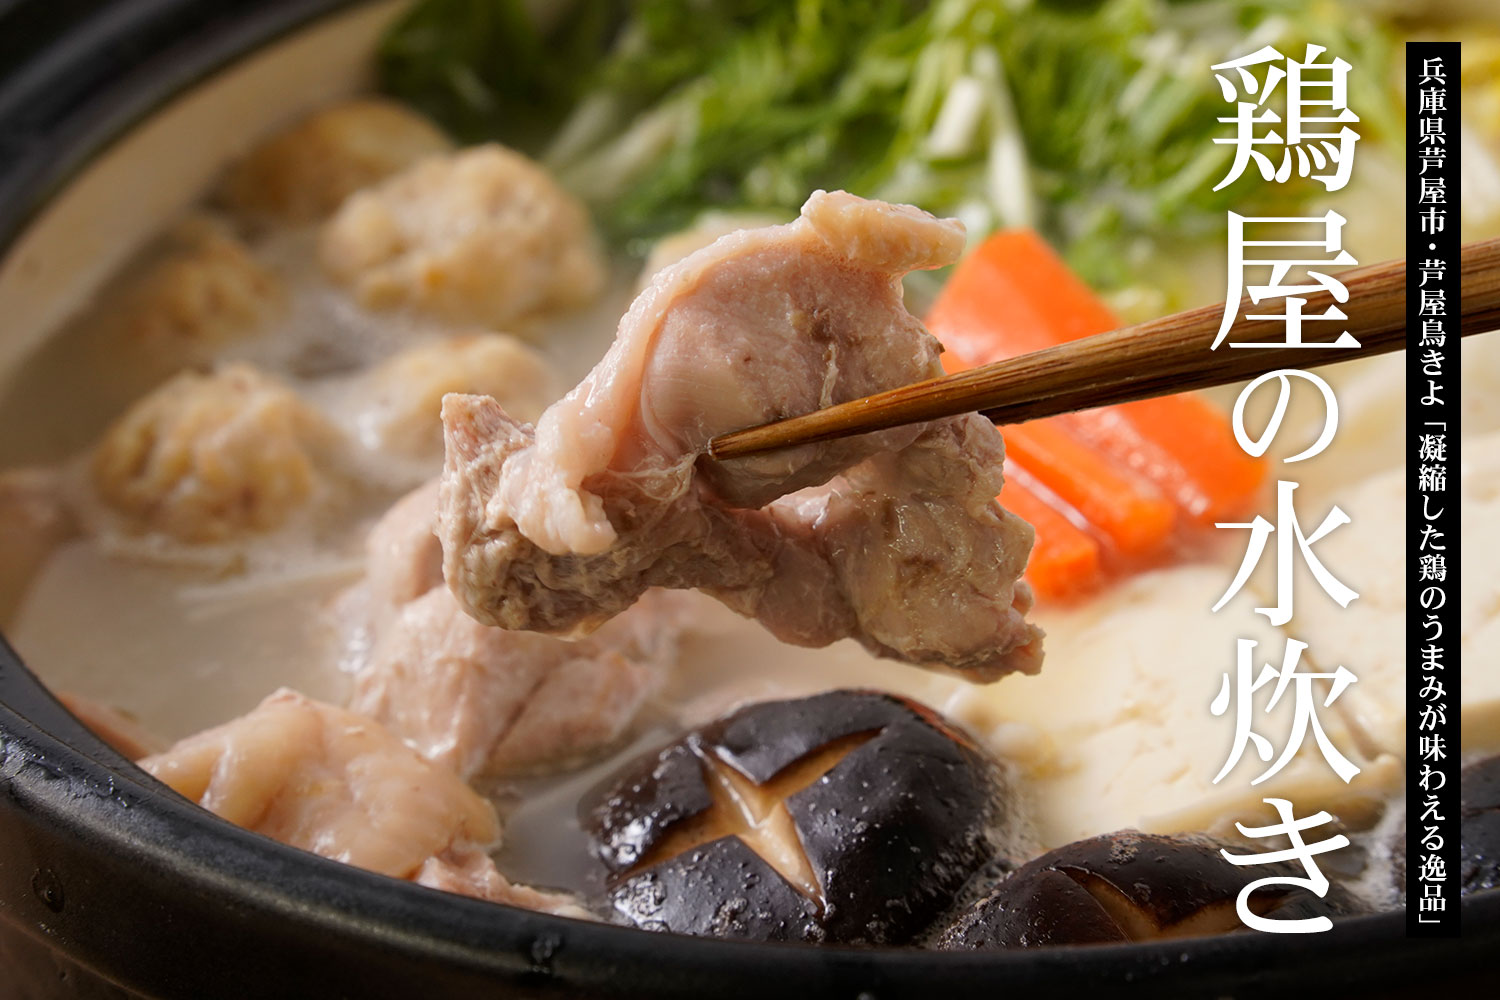 兵庫県芦屋市・芦屋鳥きよ 凝縮した鶏のうまみが味わえる逸品「鶏屋の水炊き」